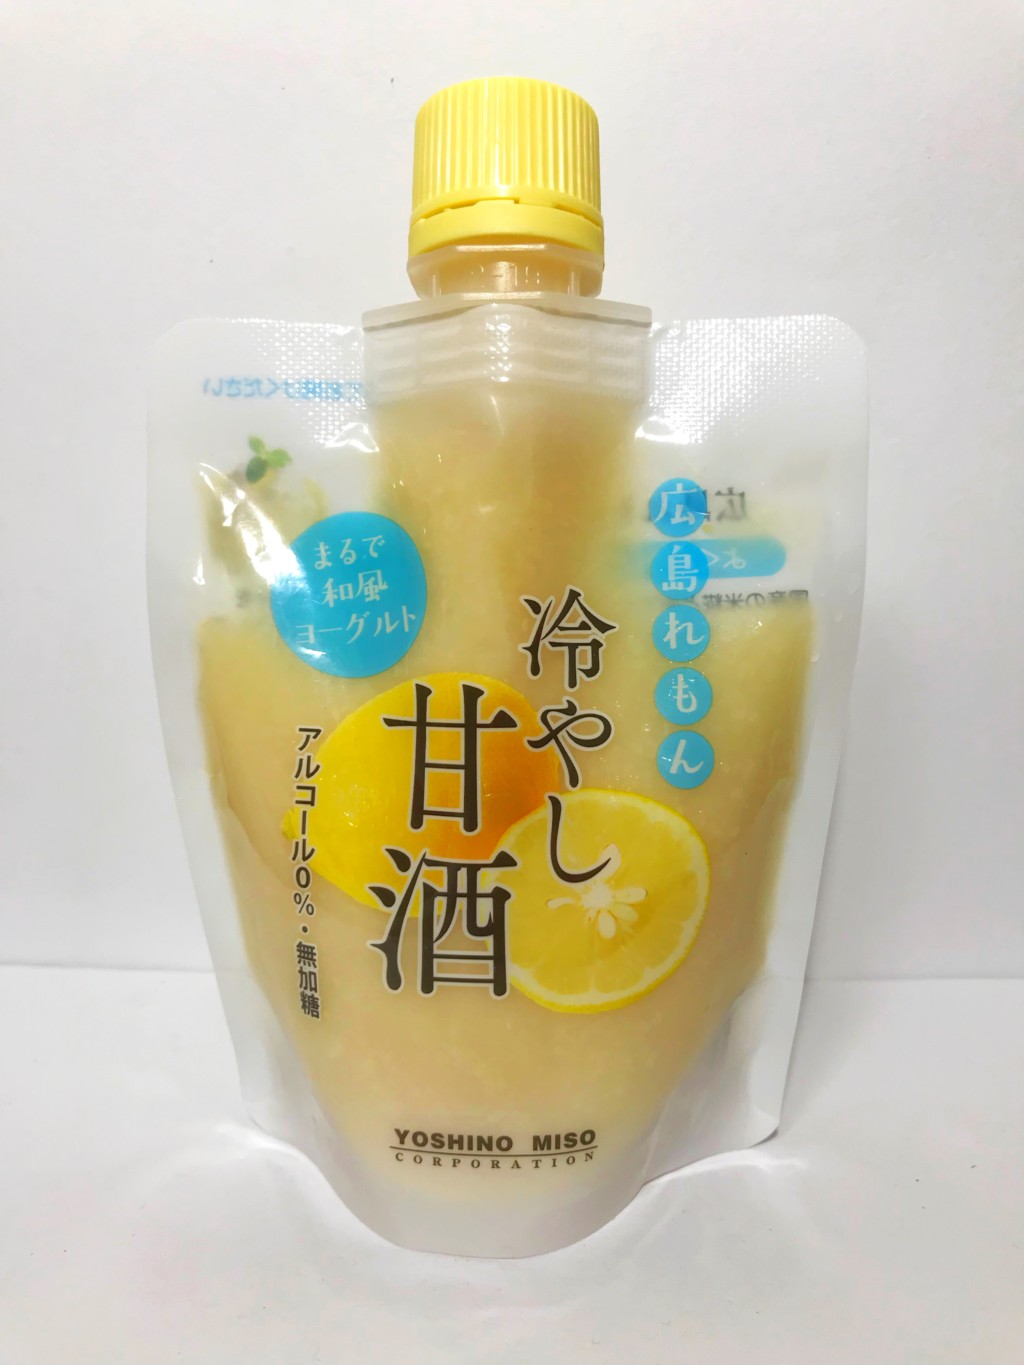 よしの味噌のレモン果汁を加えた米麹甘酒『広島れもん冷やし甘酒』